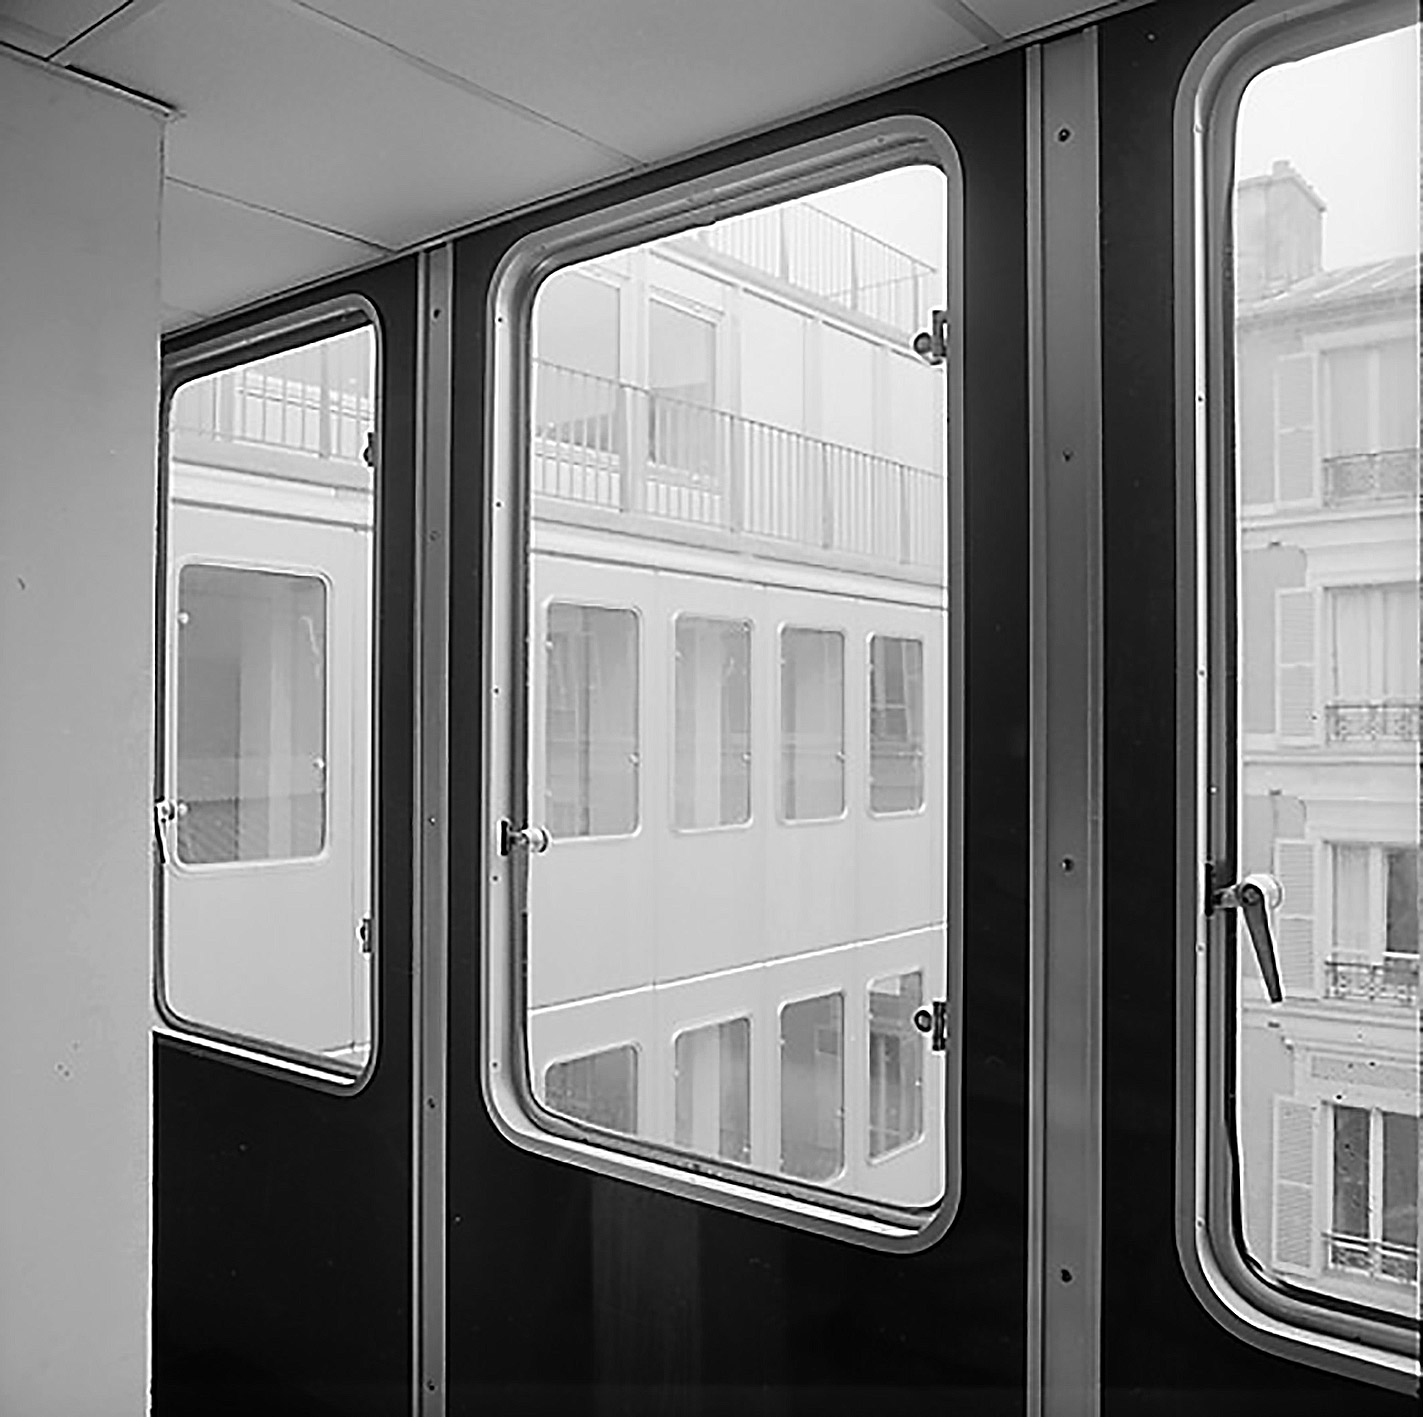 Siège social de la Compagnie industrielle de matériel de transport (CIMT), Neuilly-sur-Seine (E. Deschler, arch., 1963). Panneaux de façade conçus par Jean Prouvé.